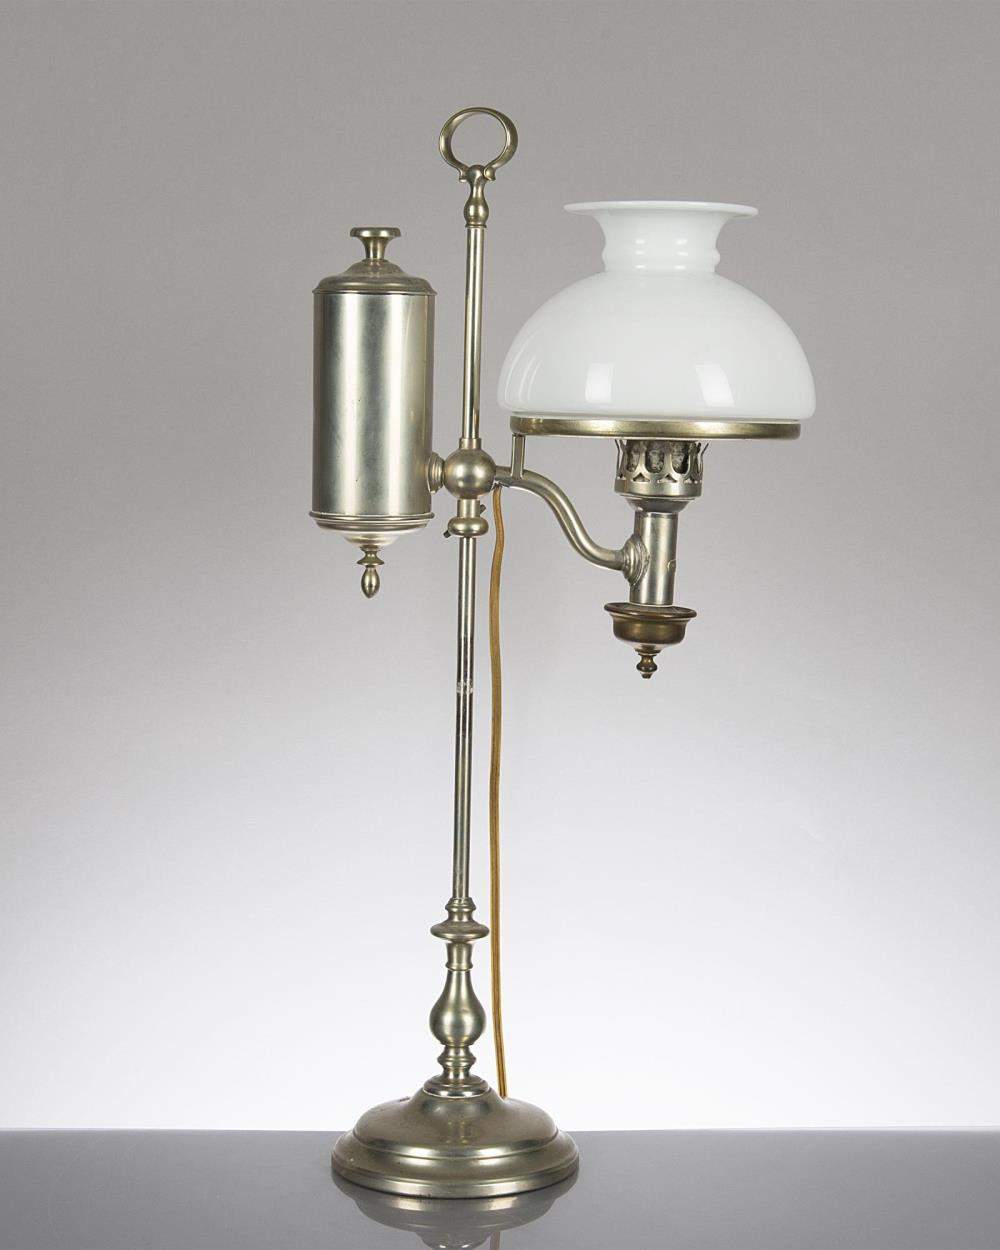 lampe de table à piston, abat-jour en opaline, par Pillischer London.

H. 52.5 cm 
 
Provenance: